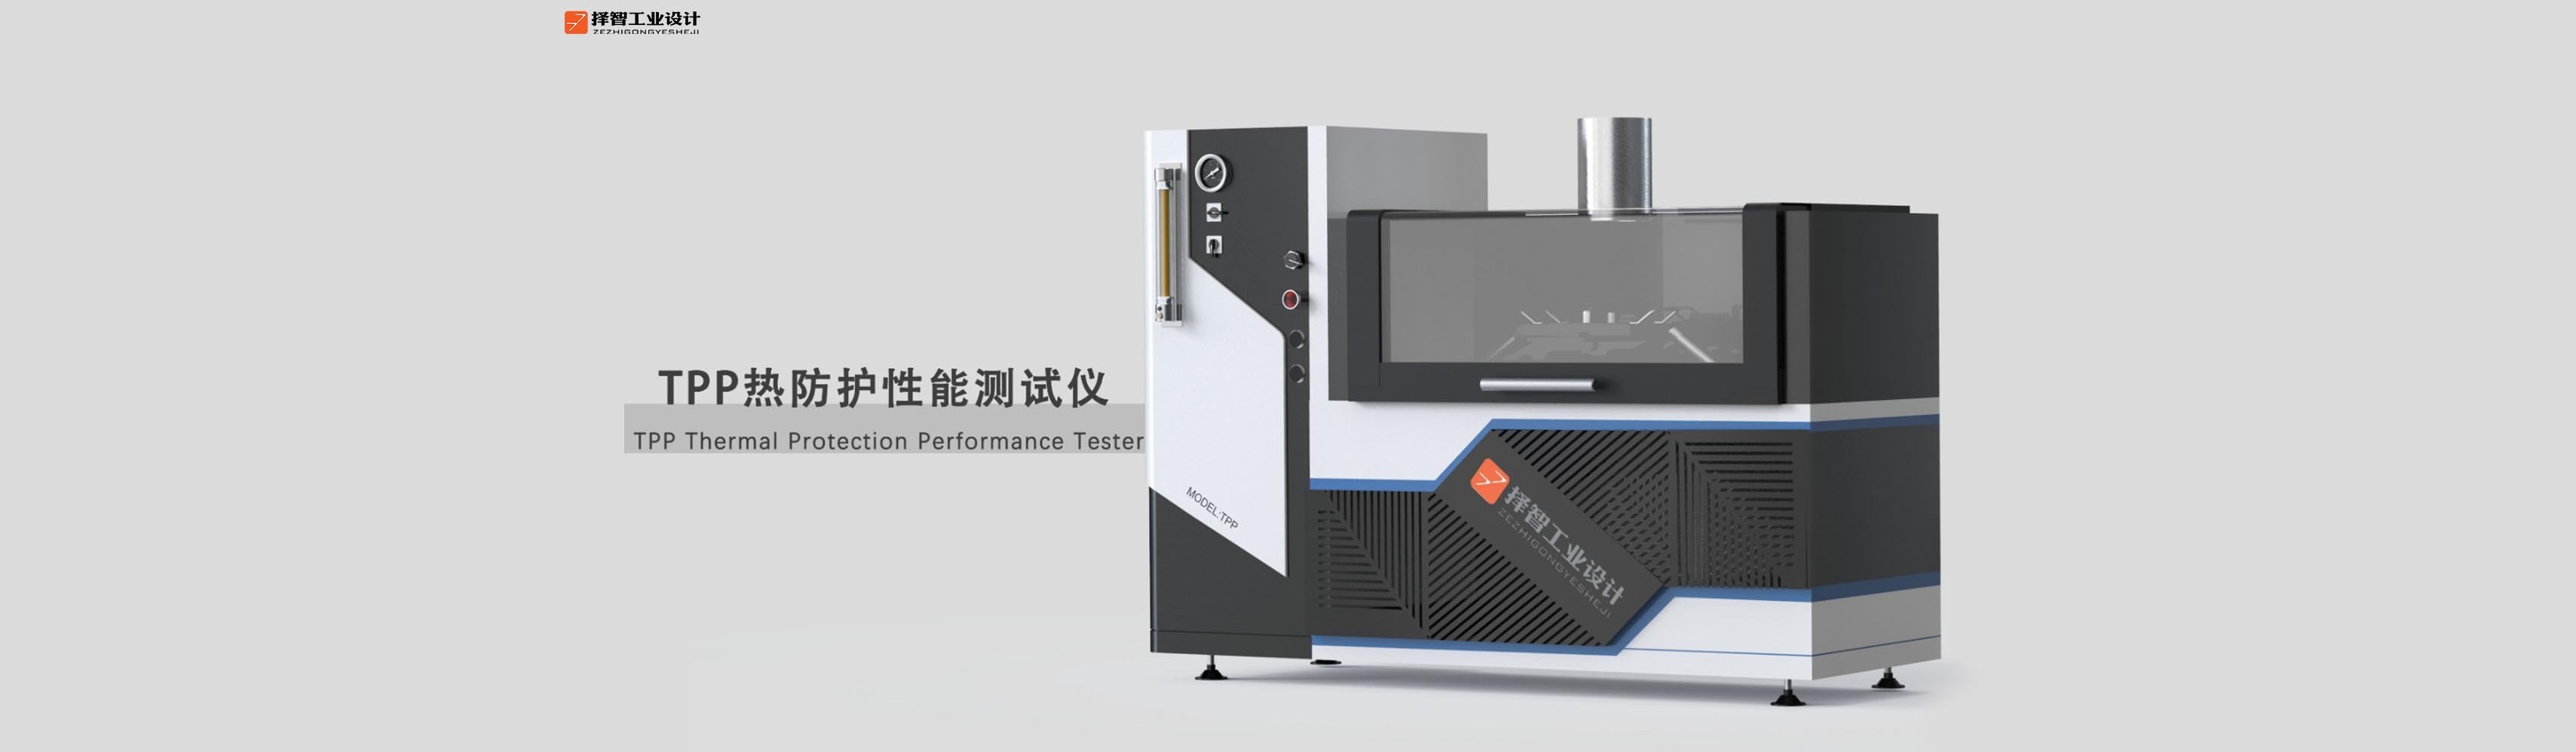 上海工业产品设计产品外观设计TPP热性能防护测试仪外观设计